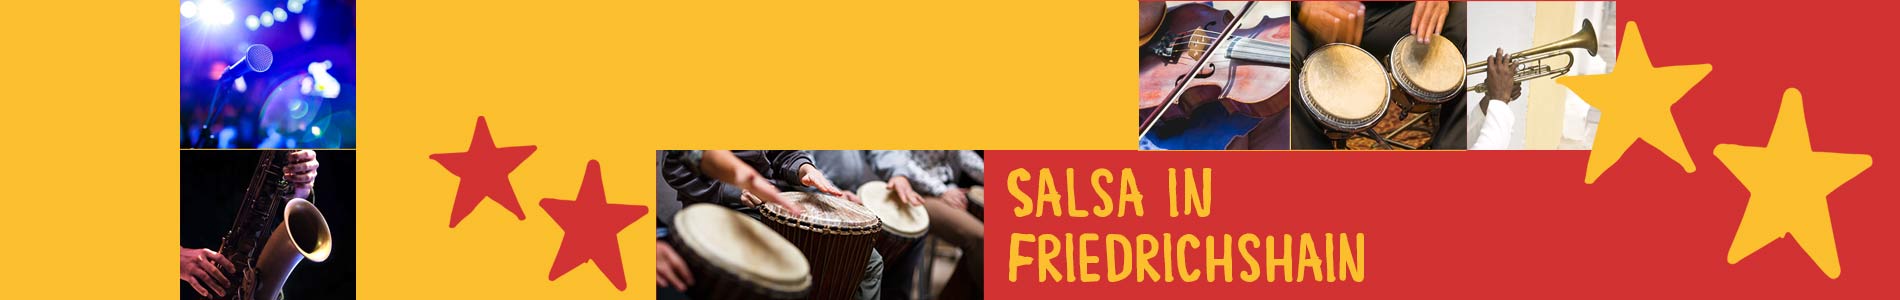 Salsa in Friedrichshain – Salsa lernen und tanzen, Tanzkurse, Partys, Veranstaltungen